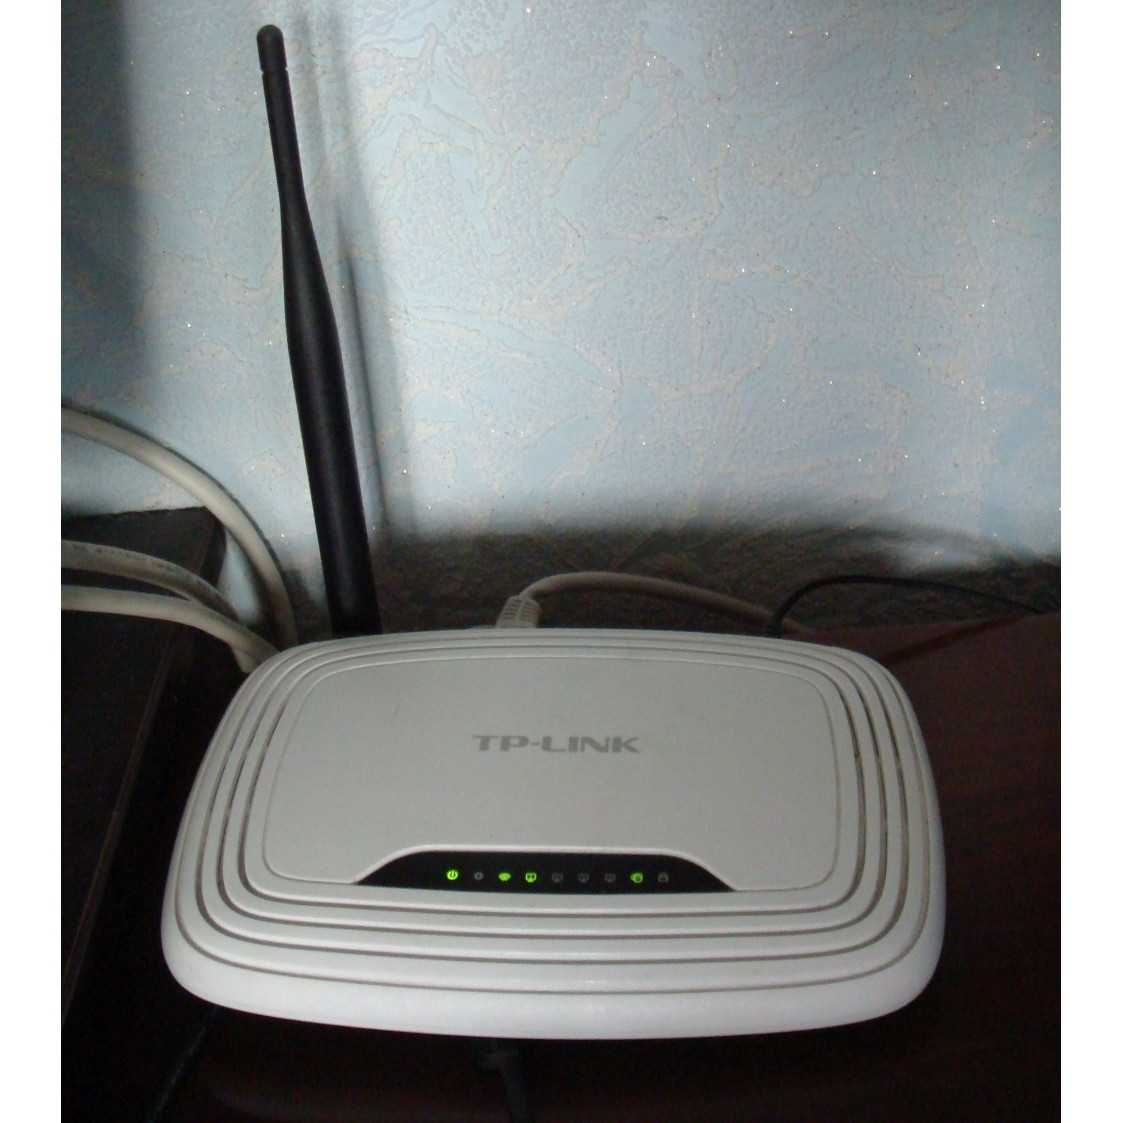 Wi-Fi роутера TP-LINK TL-WR740N - подробные характеристики обзоры видео фото Цены в интернет-магазинах где можно купить wi-fi роутеру TP-LINK TL-WR740N